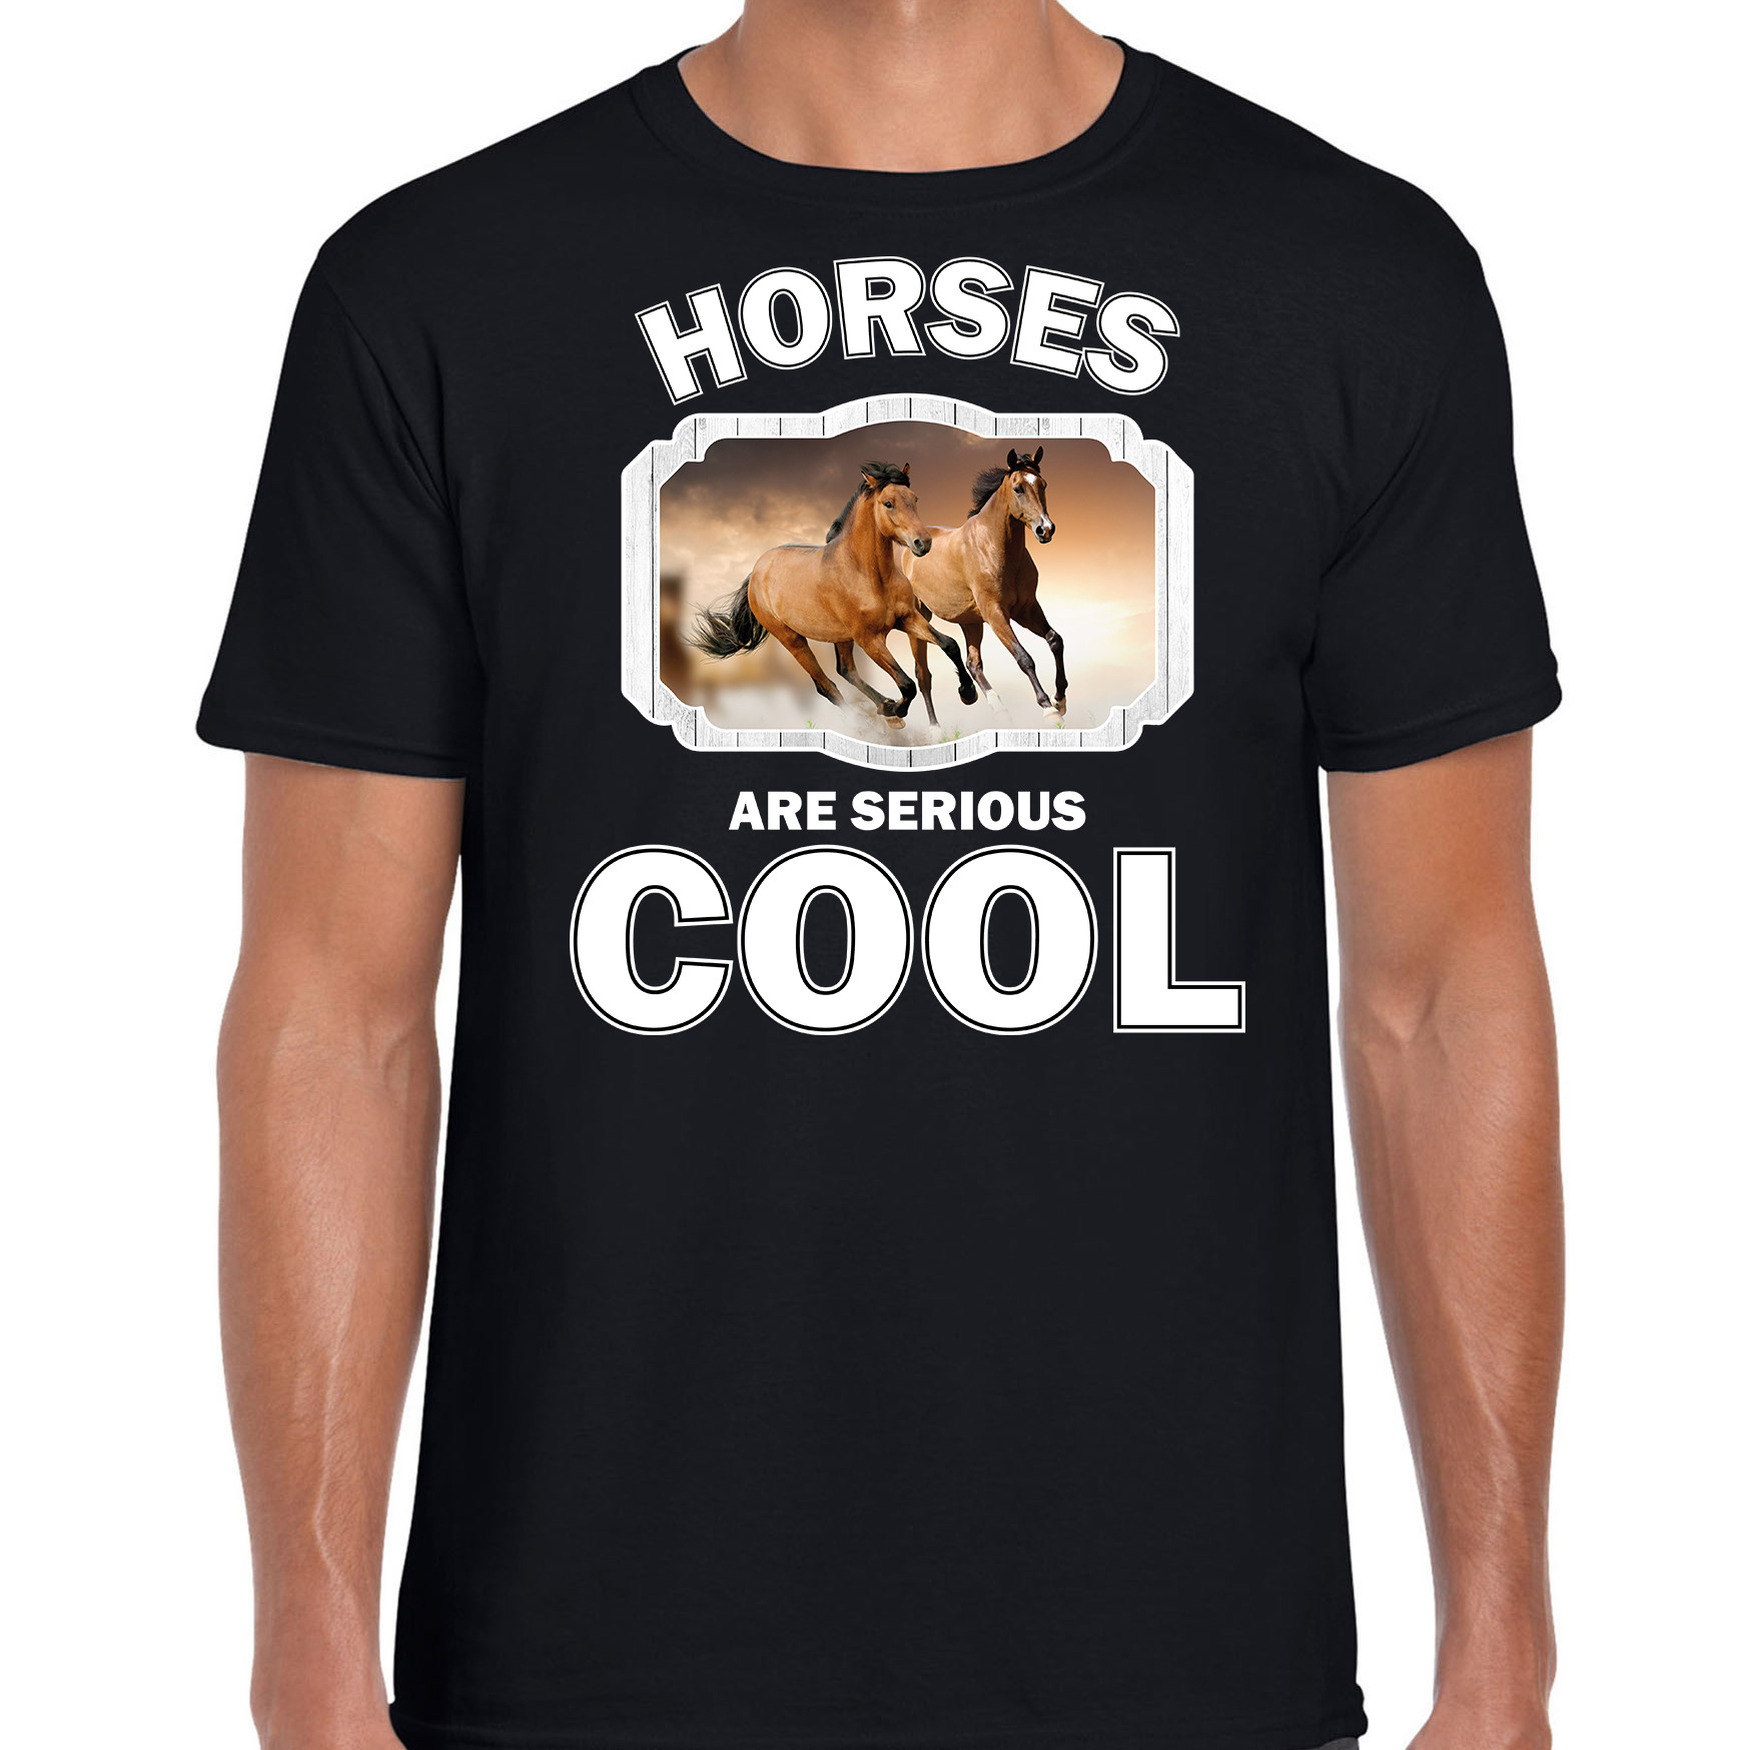 Dieren bruin paard t-shirt zwart heren - horses are cool shirt